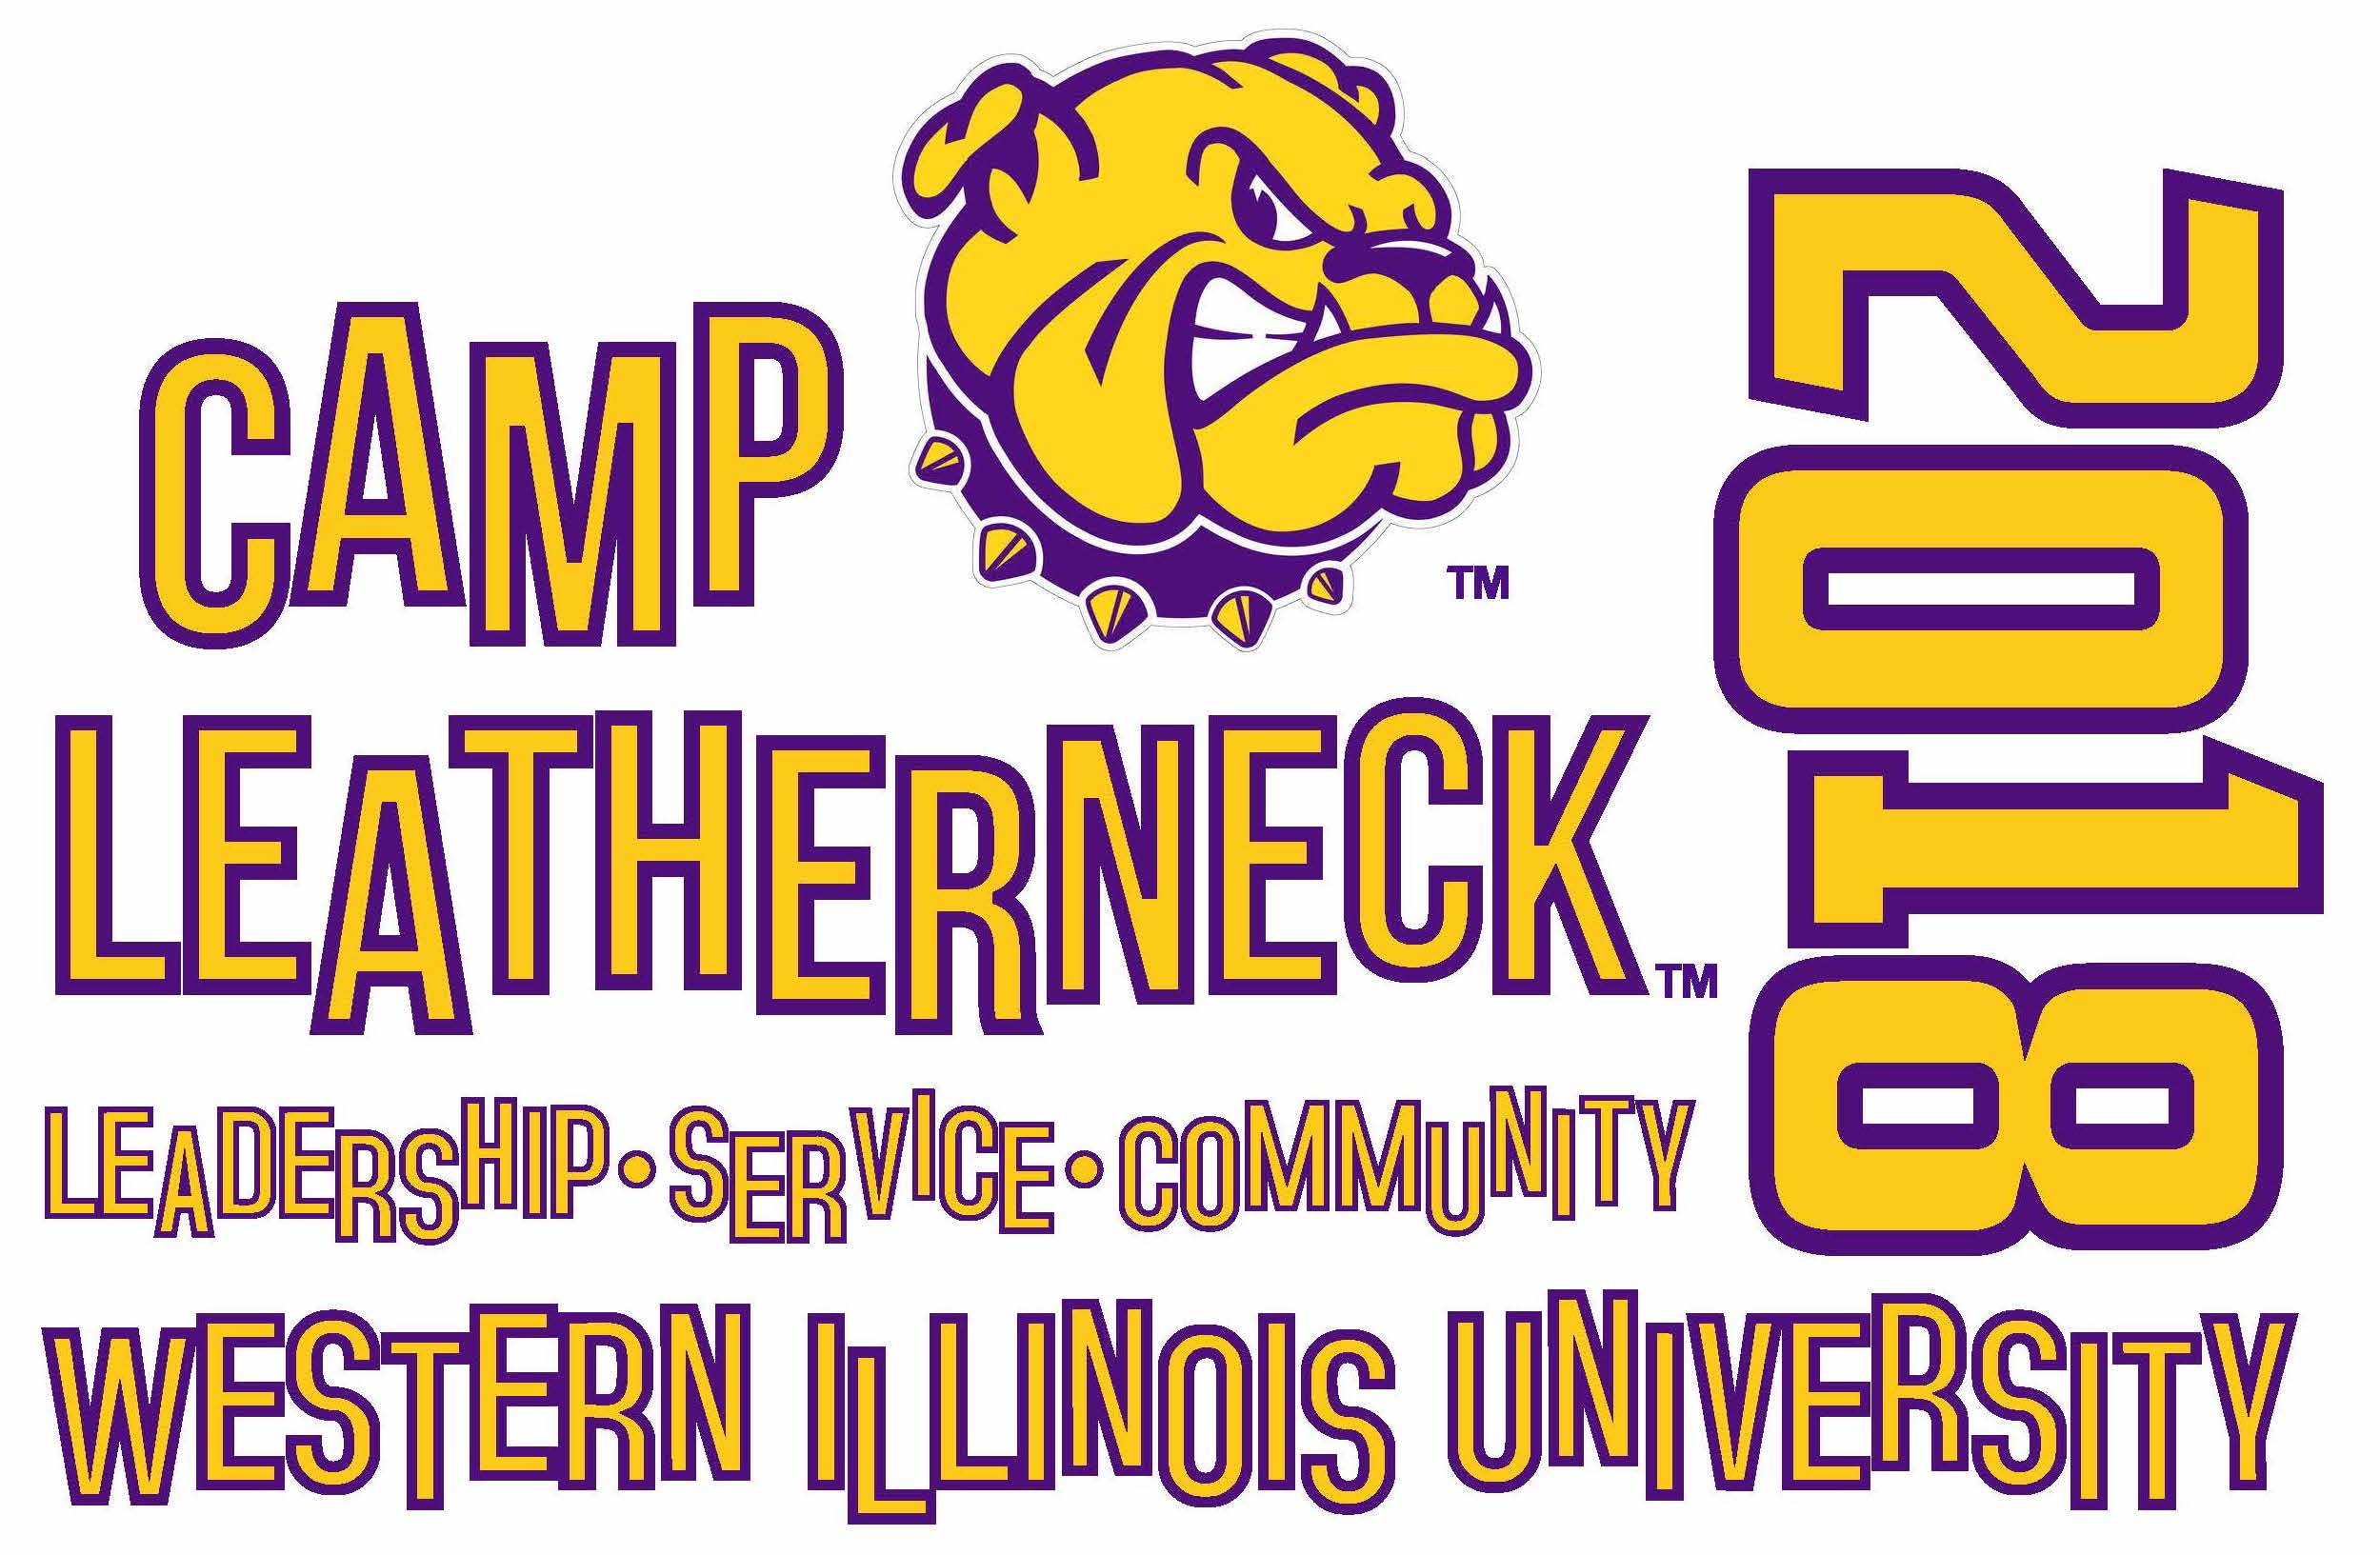 Western Illinois University Logo - Camp Leatherneck - Western Illinois University